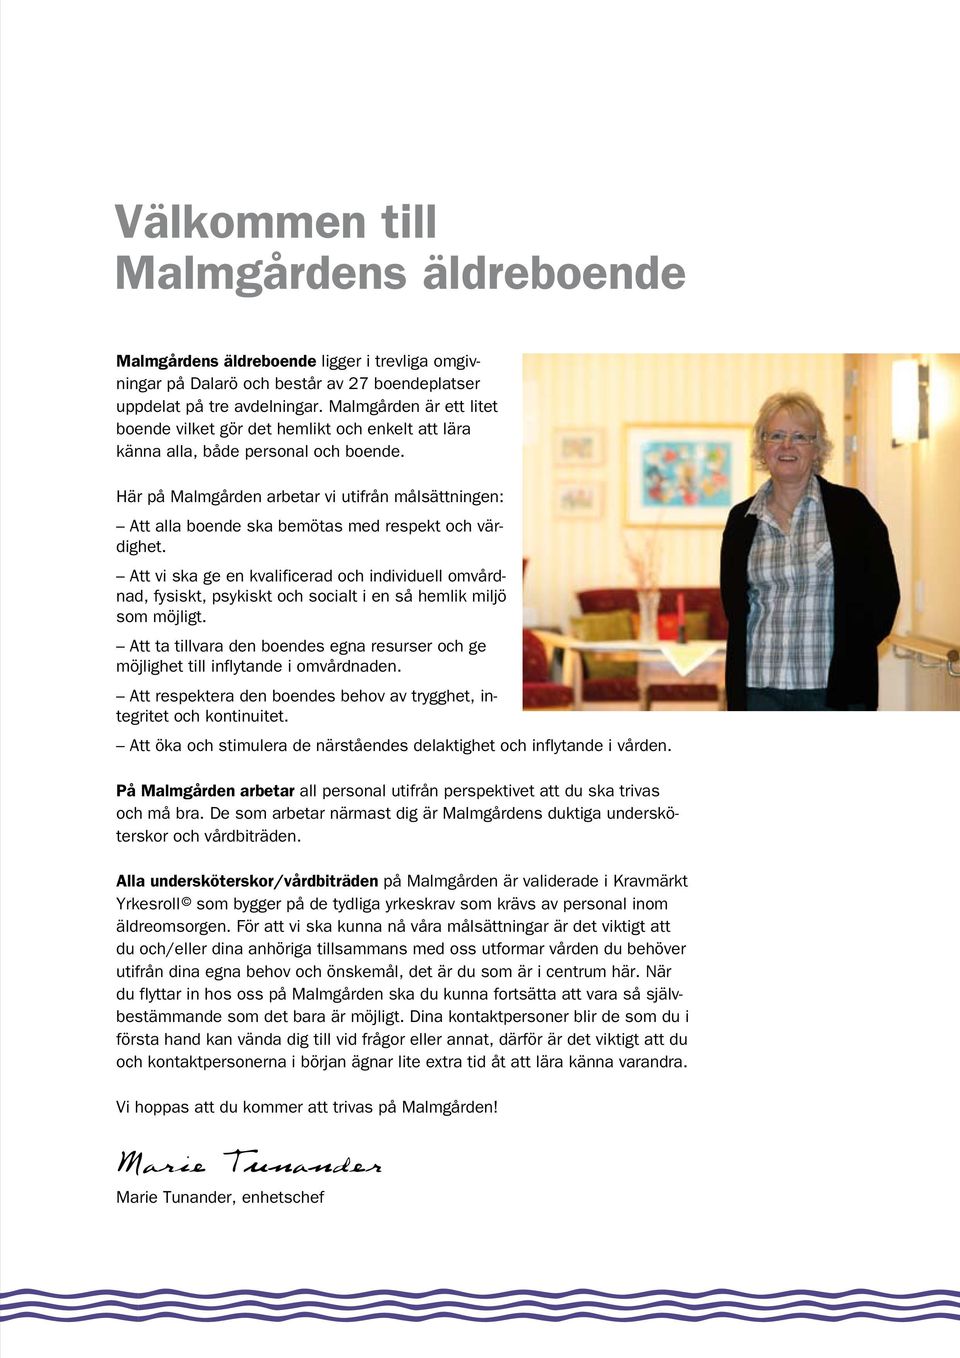 Här på Malmgården arbetar vi utifrån målsättningen: Att alla boende ska bemötas med respekt och värdighet.